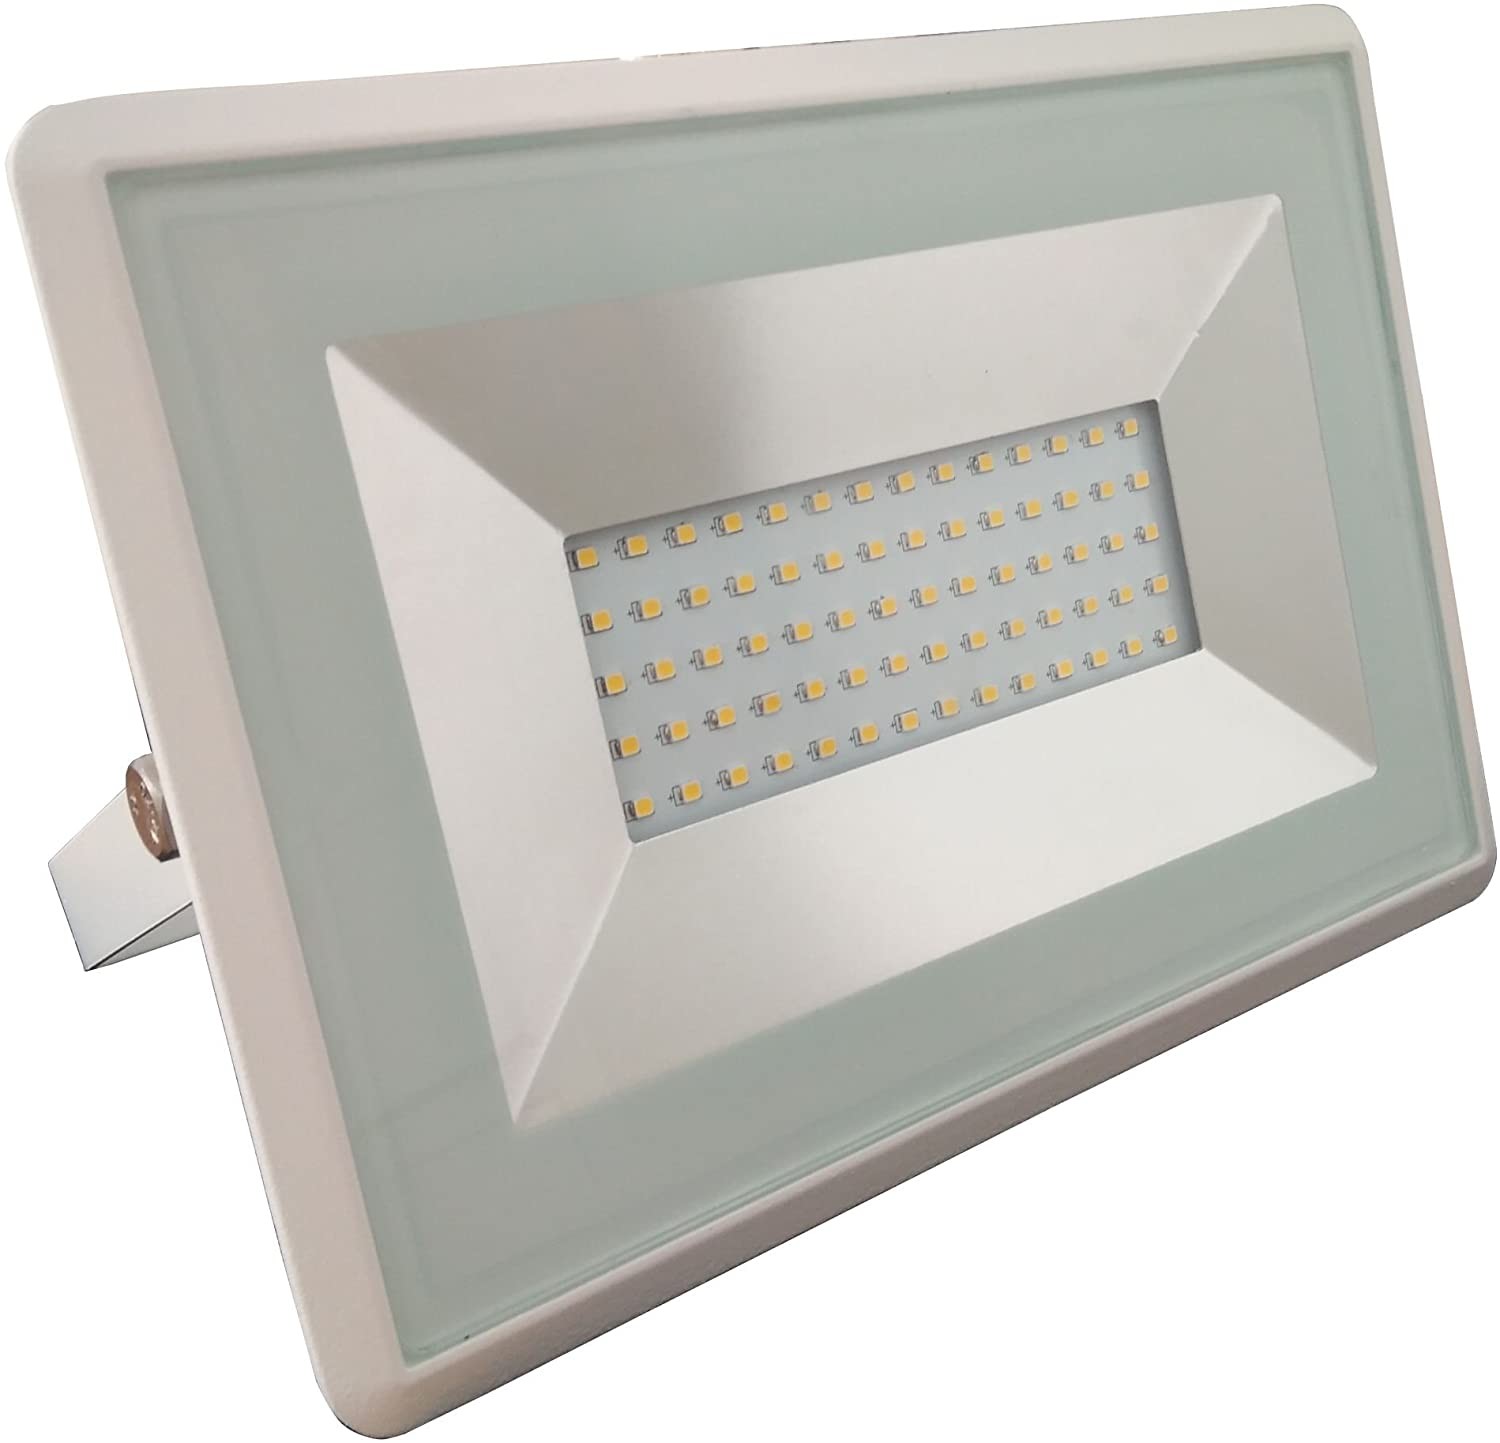 .LED reflektor   50W   IP65   4000K   semleges fehér fény   SLIM   fehér színű